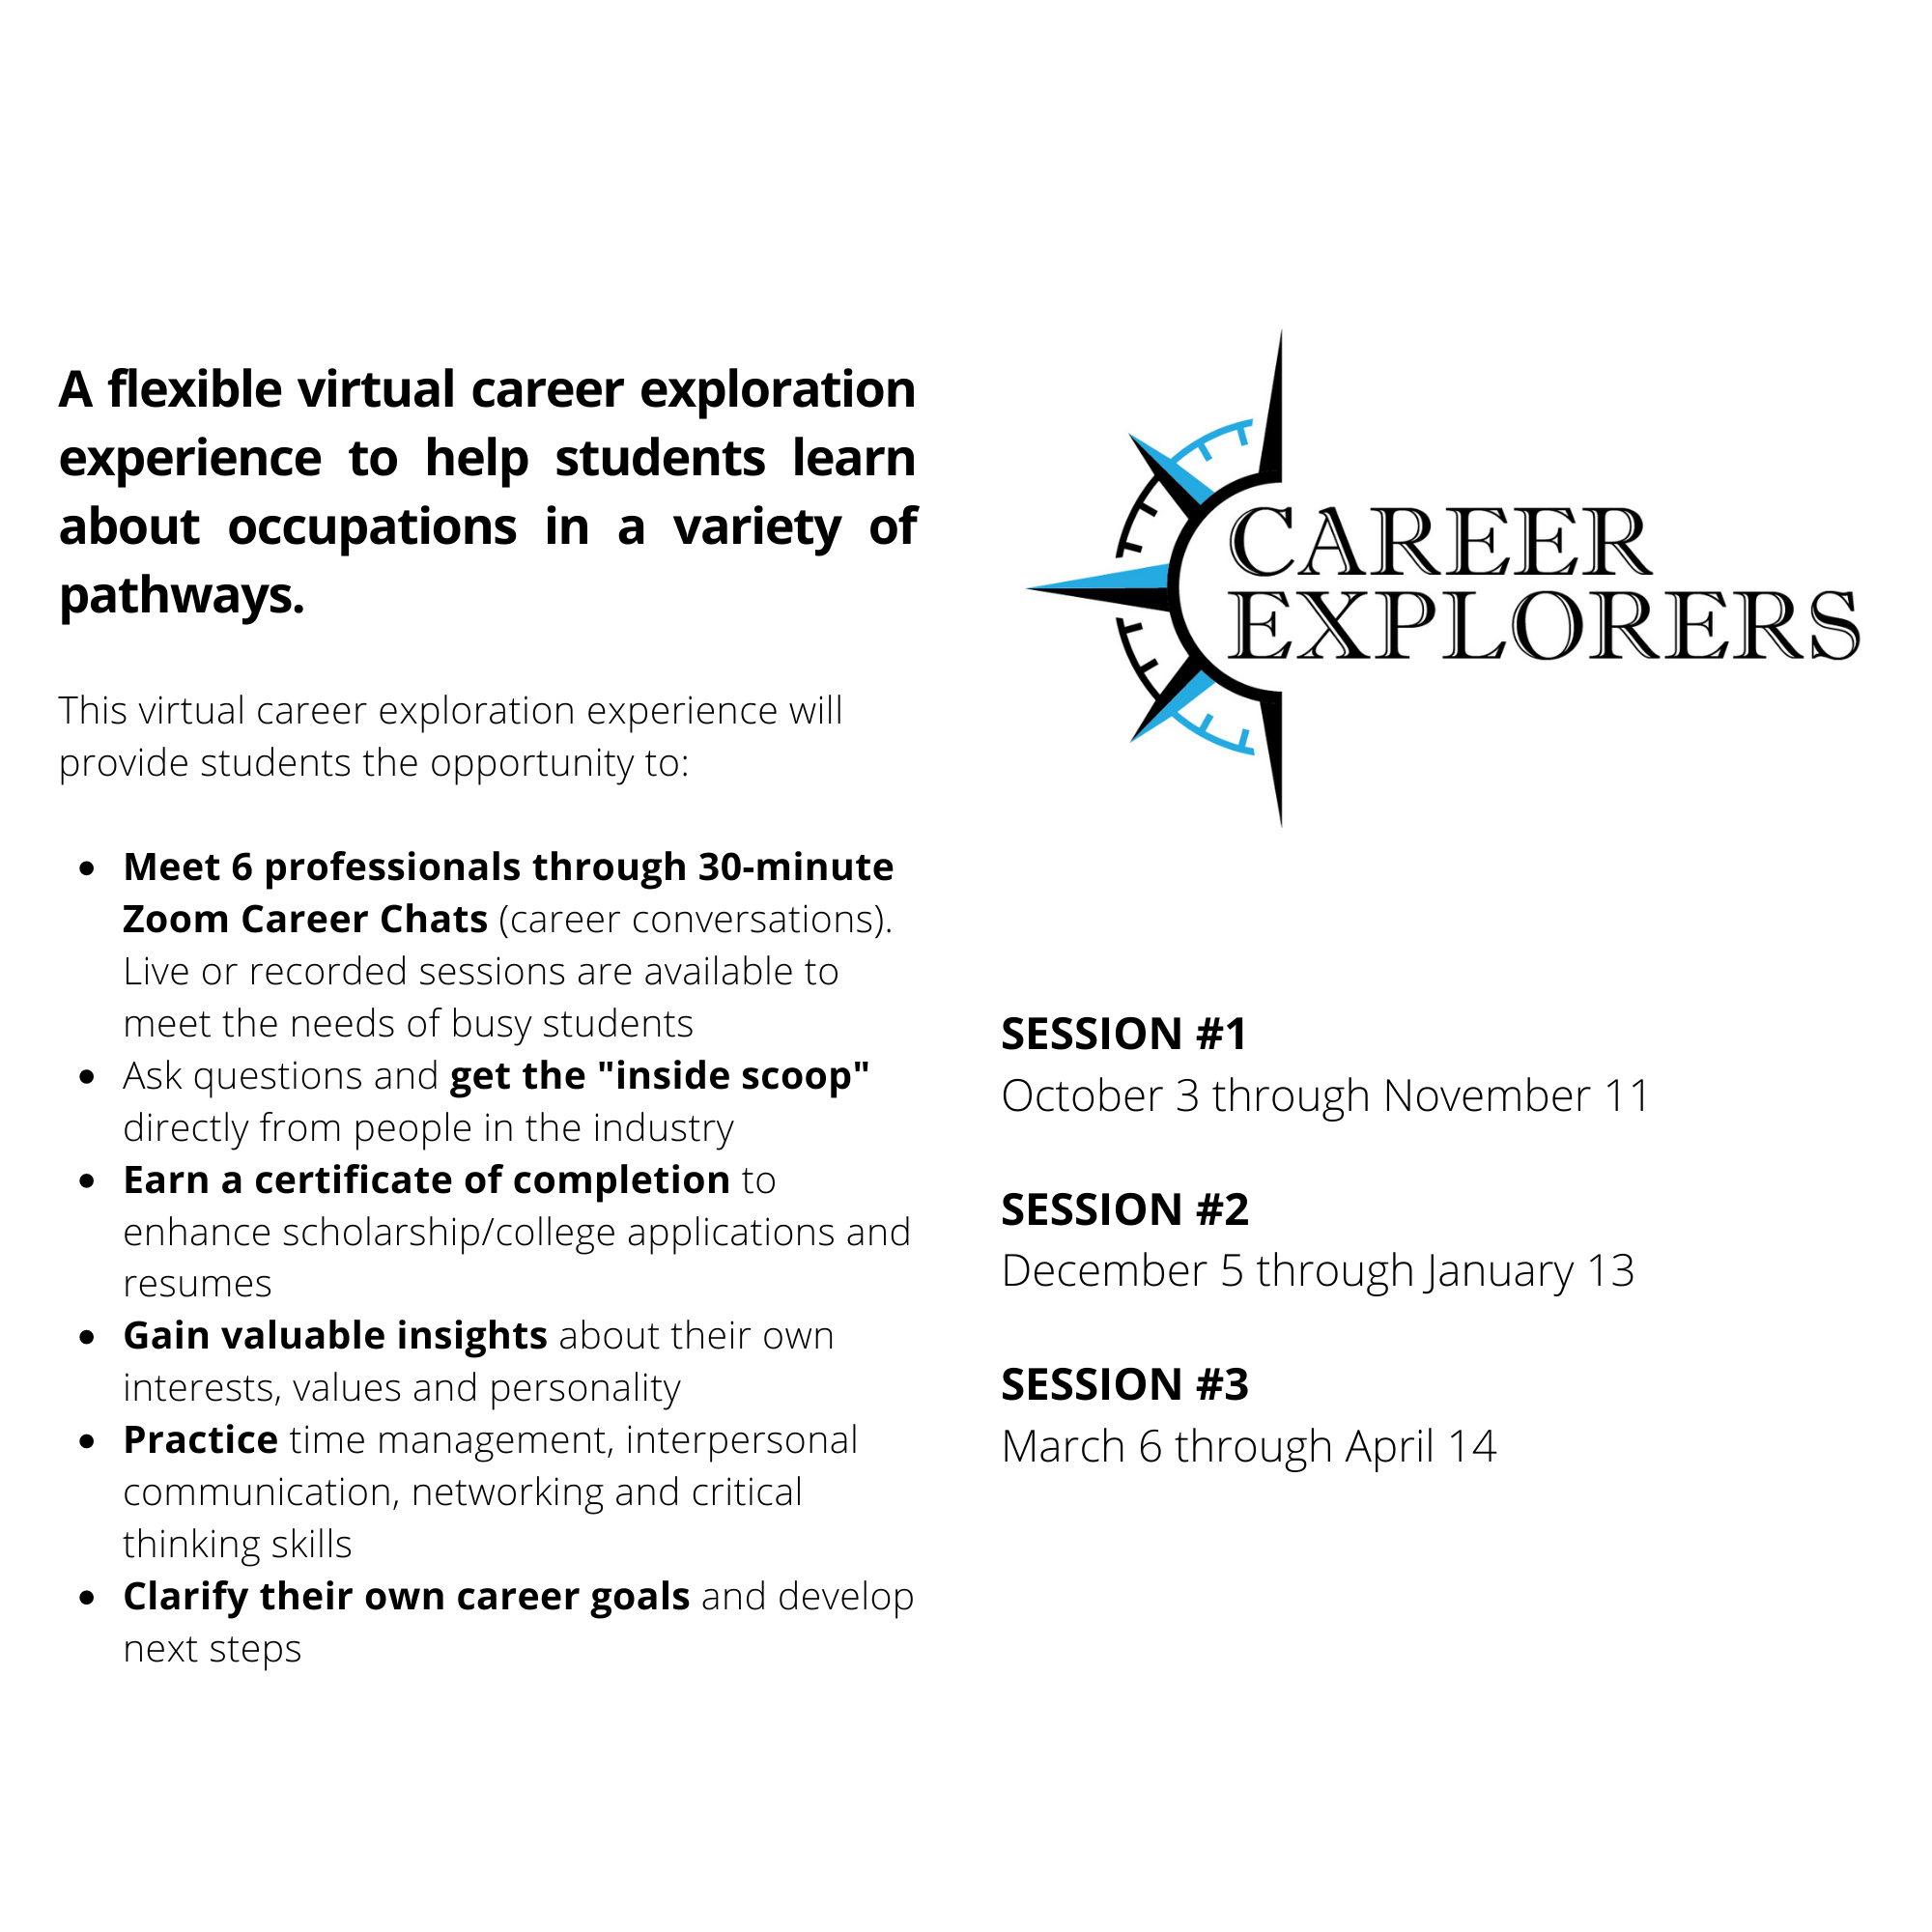 Career Explorers Schedule